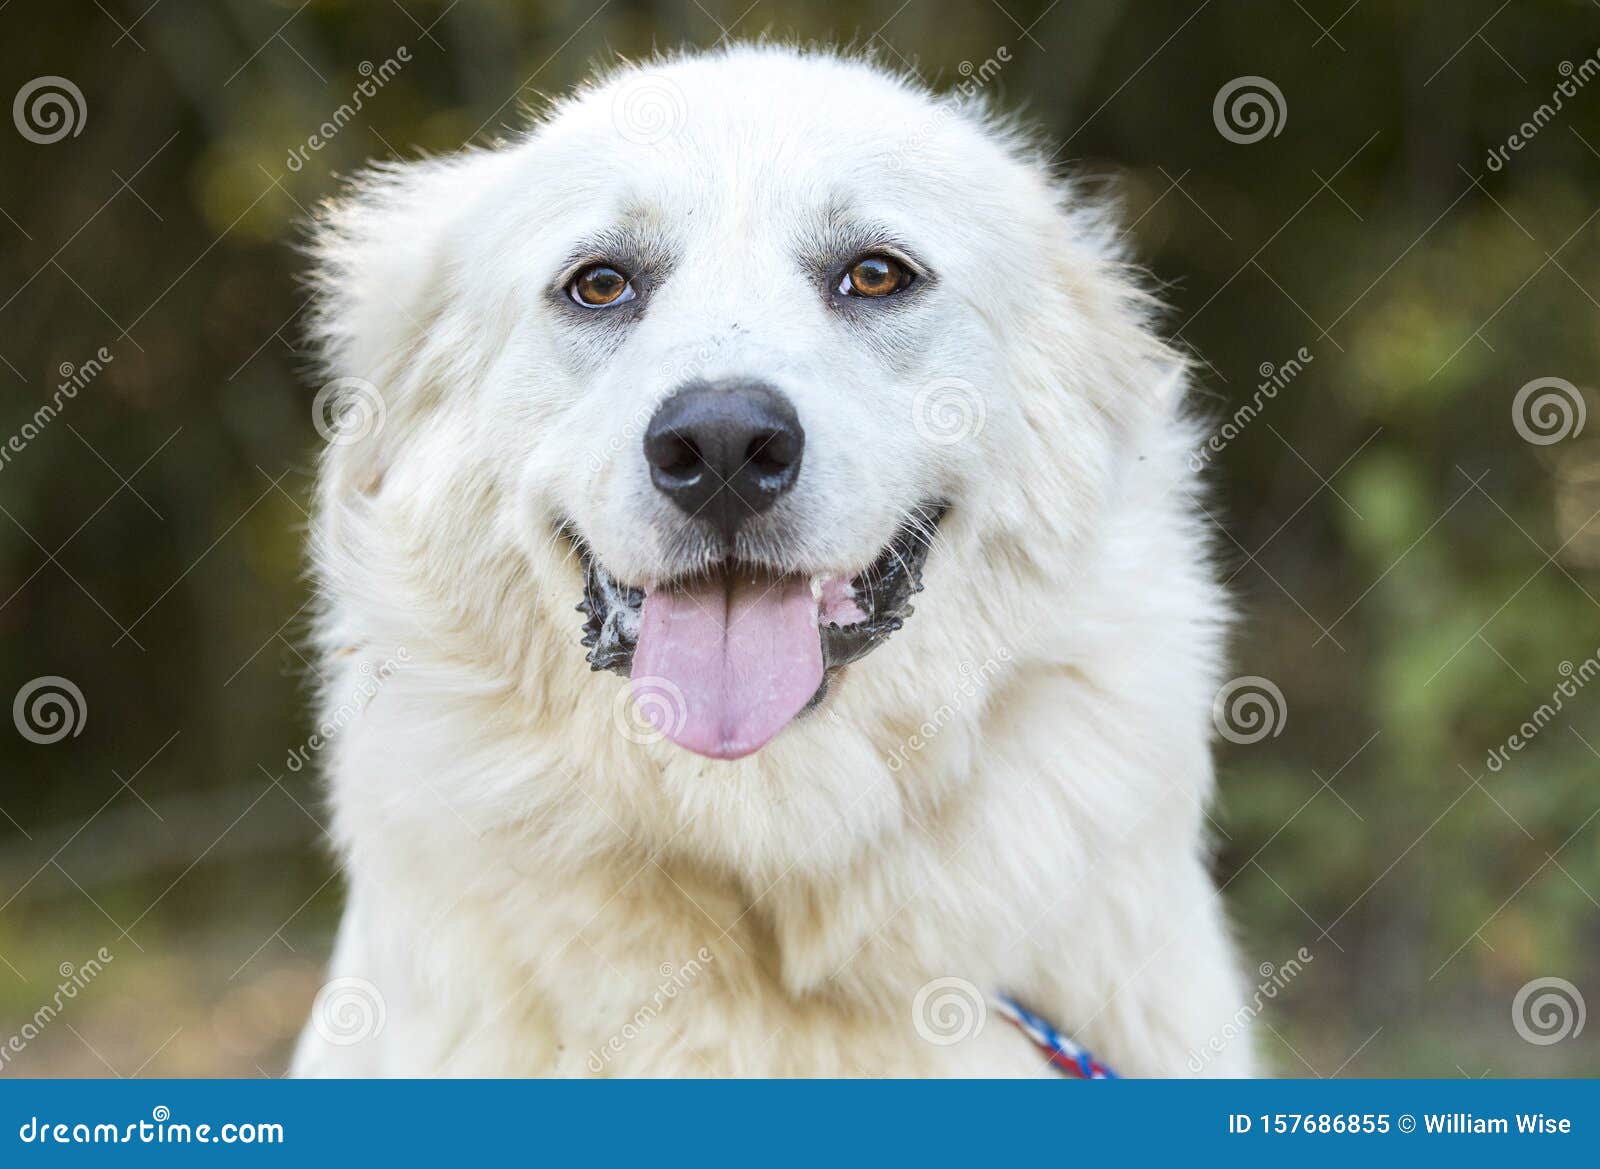 lazy large white great pyrenees dog